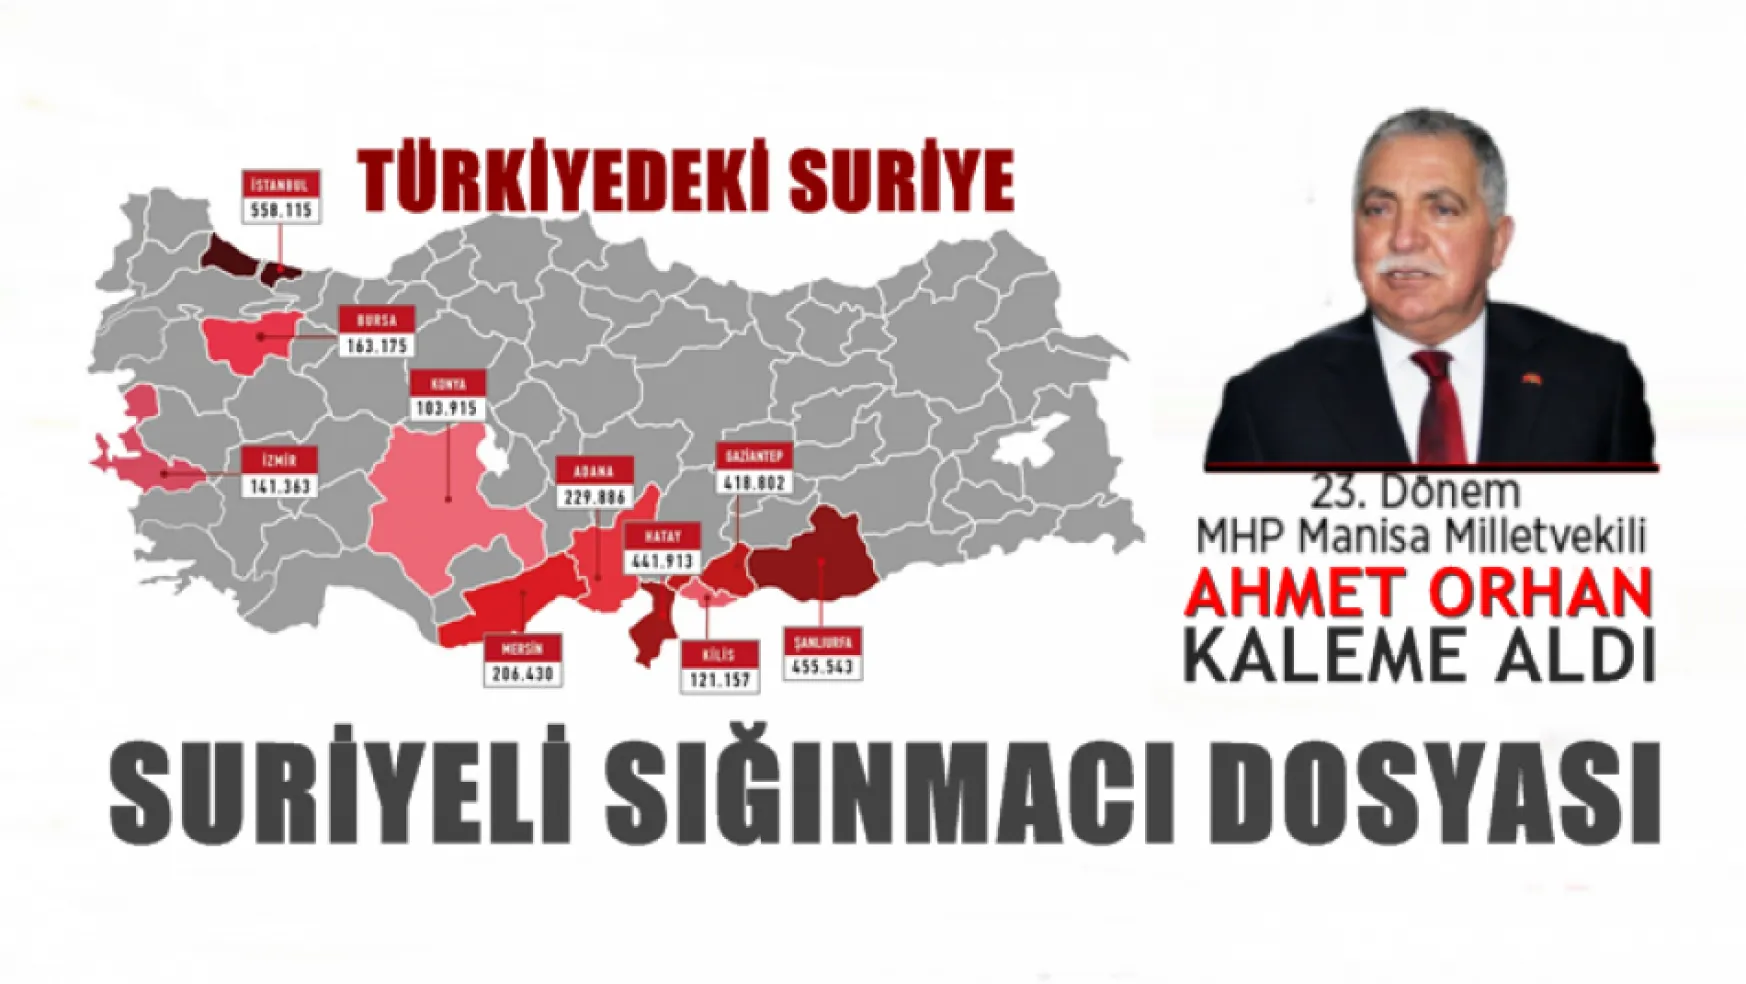 Ahmet Orhan yazdı: 'TÜRKİYE'DEKİ SURİYE'